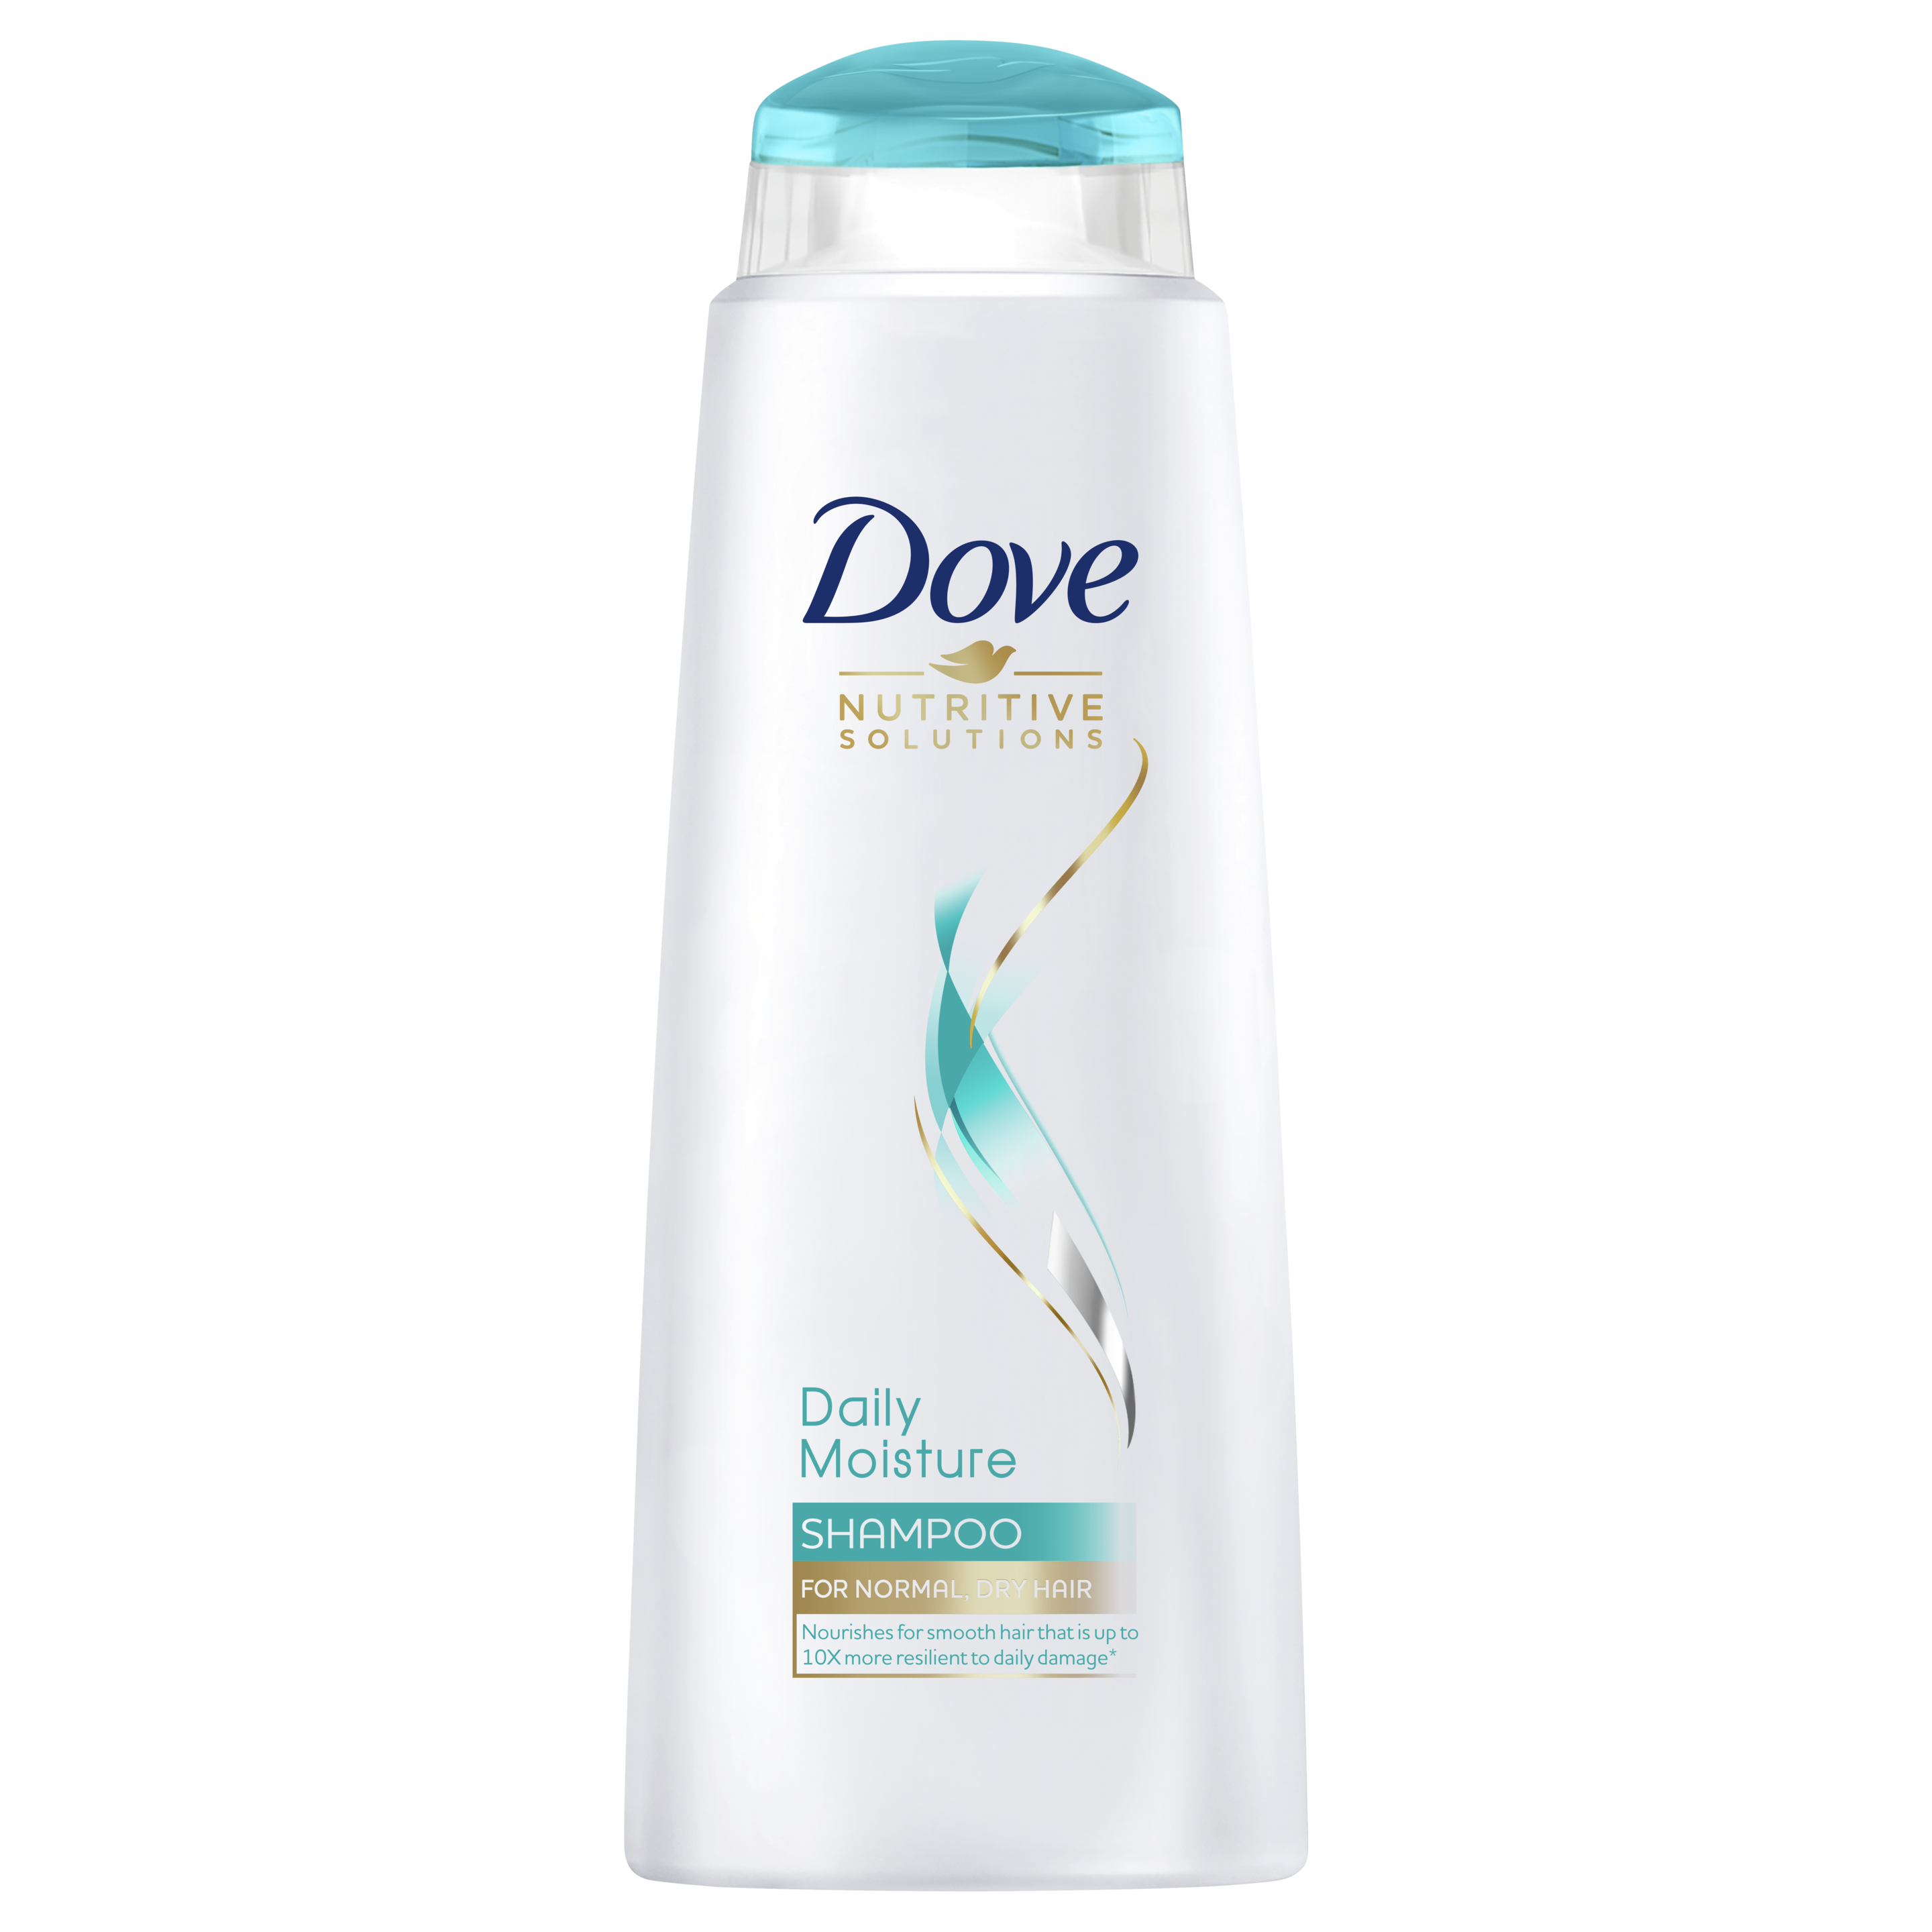 Daily Moisture Shampoo